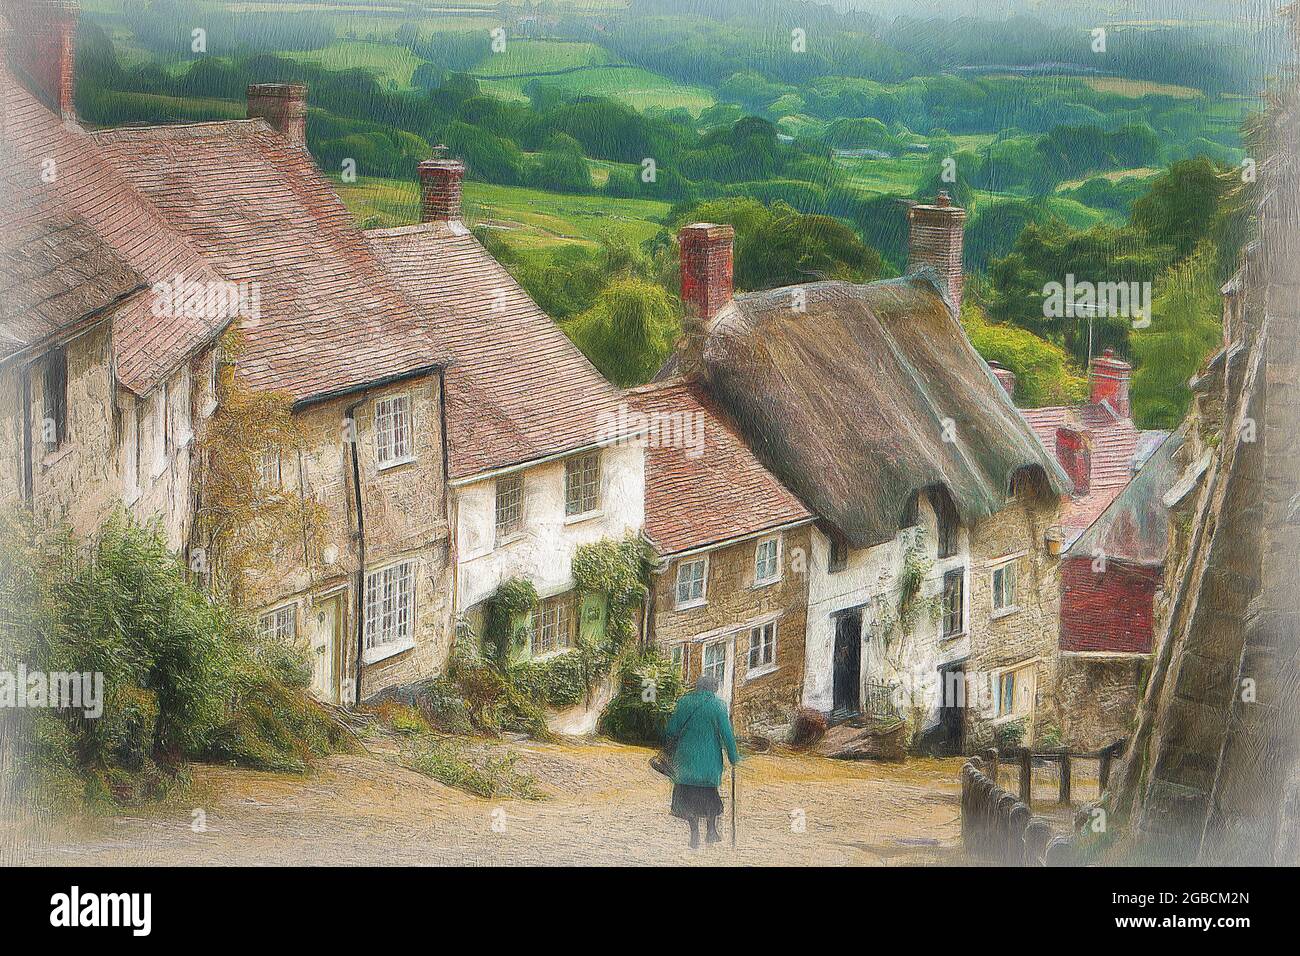 Gold Hill dans Shaftesbury Dorset, rendu célèbre par la publicité Hovis de quelques années. Avec une finition peinte et texturée. Banque D'Images